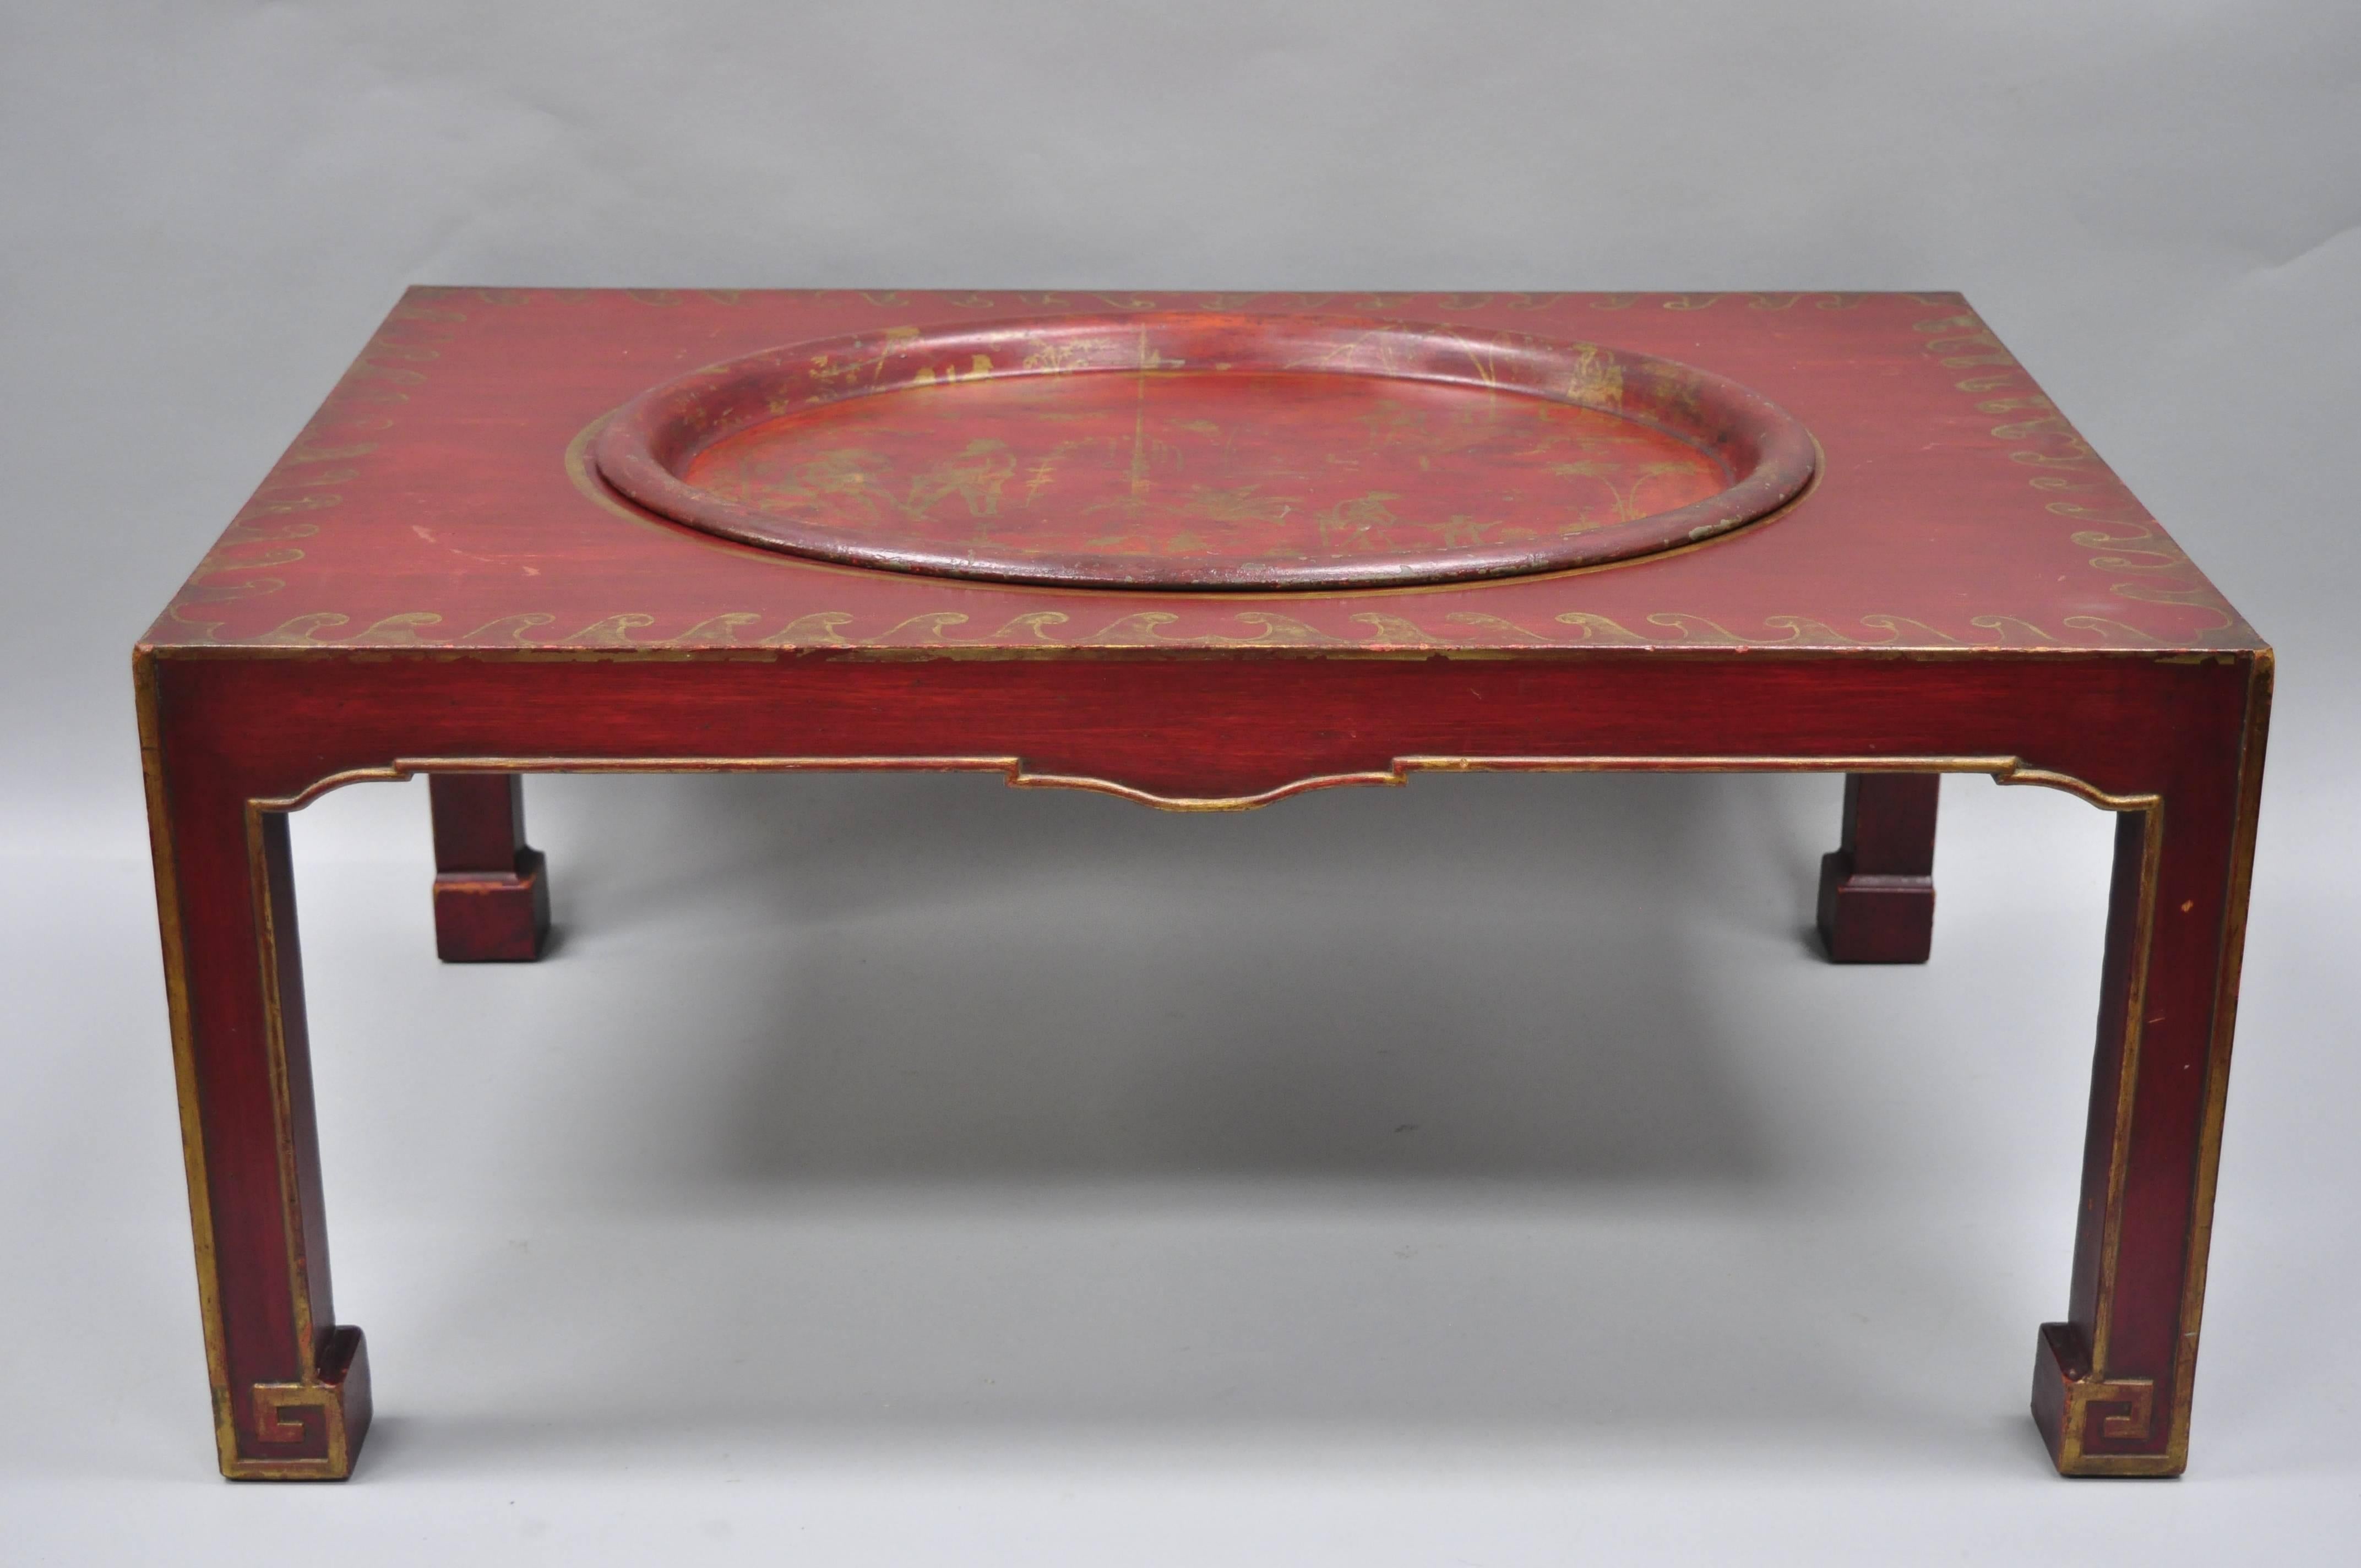 20ième siècle Table basse orientale chinoiseries rouge avec plateau de service amovible en métal tôle en vente